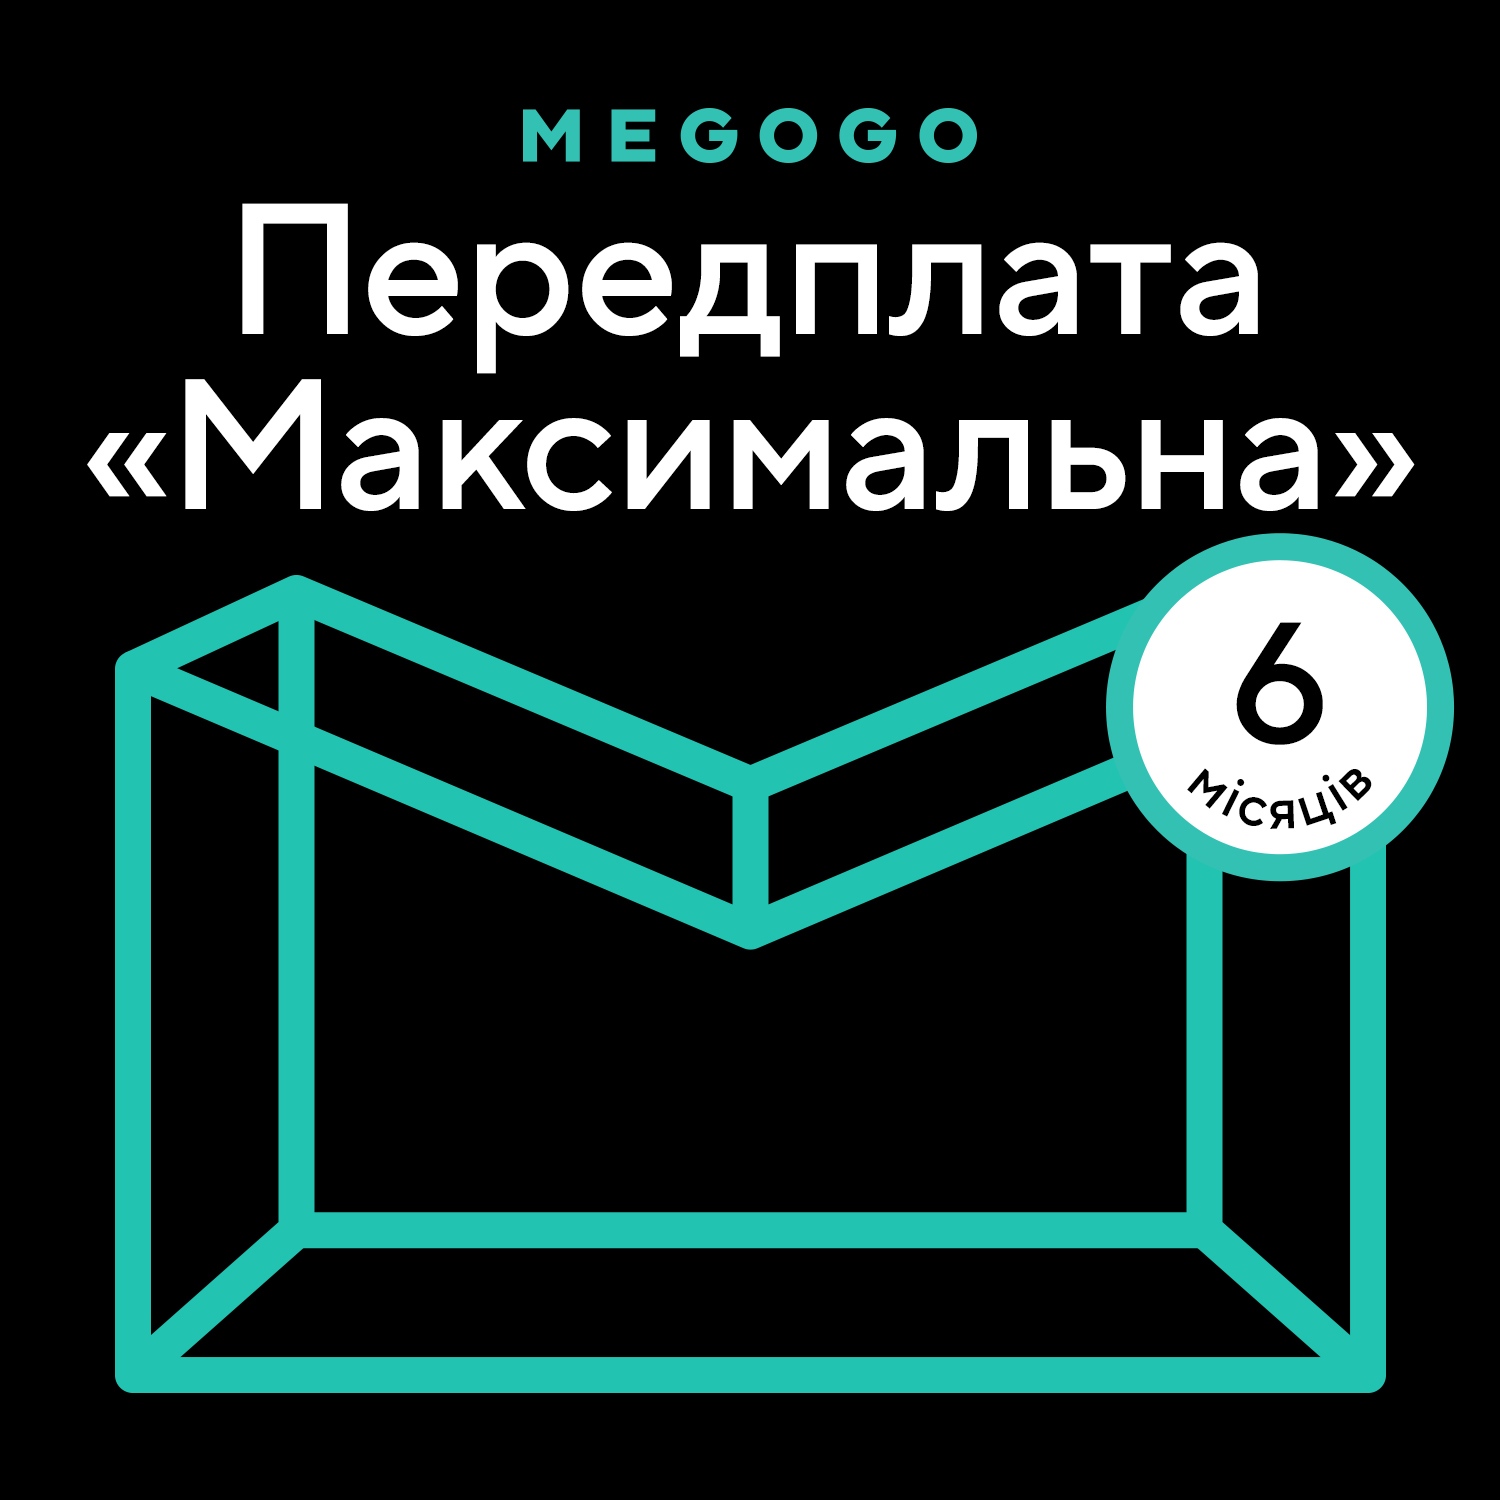 MEGOGO «Кино и ТВ: Максимальная» 6 мес в Киеве